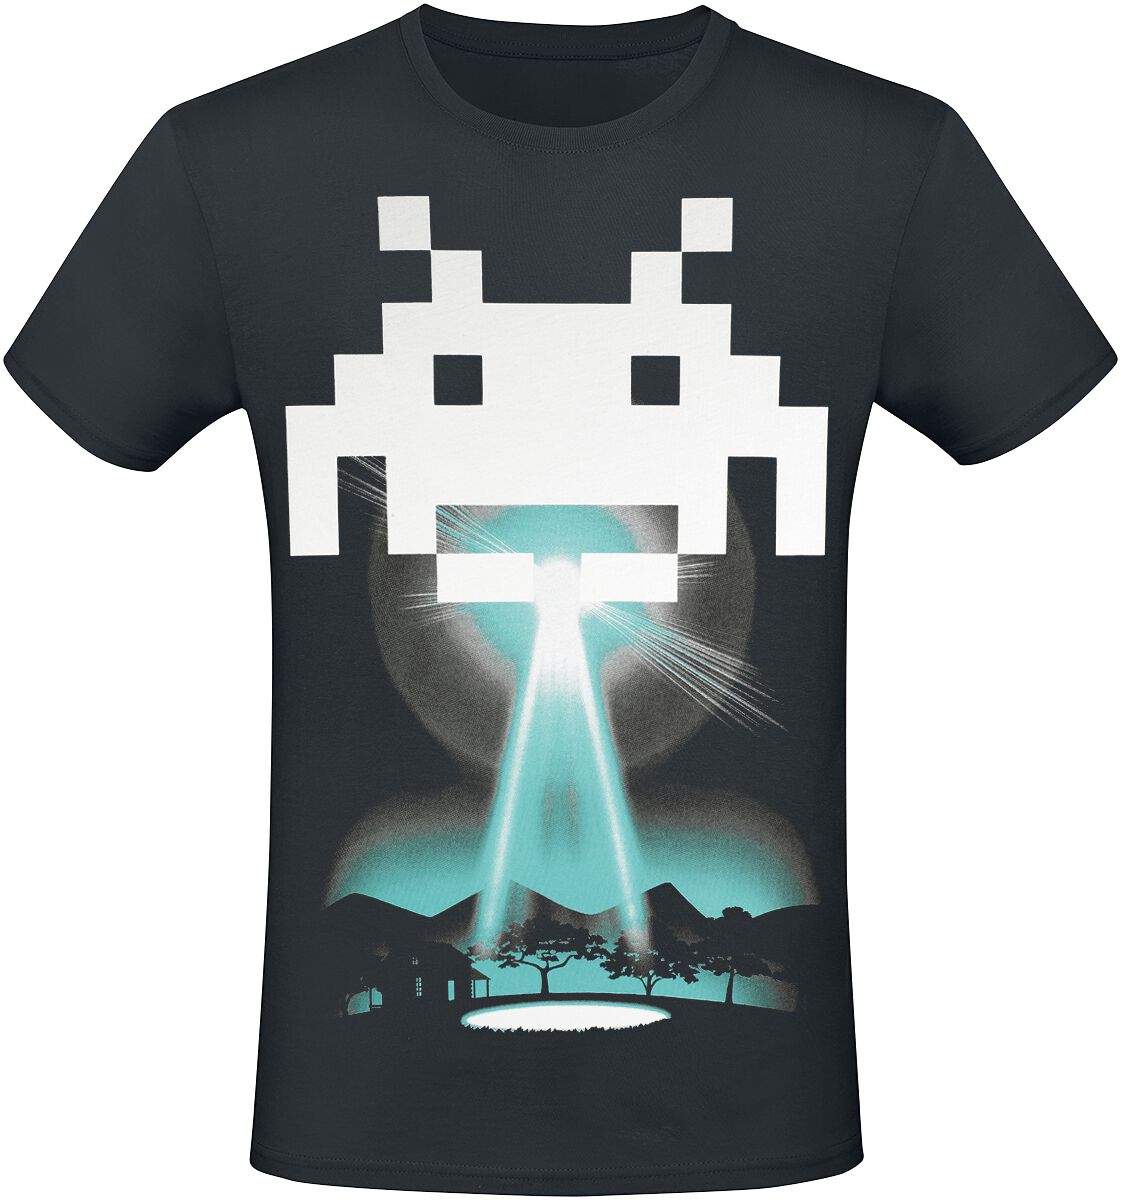 Space Invaders - Gaming T-Shirt - Beam Me Up Alien - XS bis 3XL - für Männer - Größe XS - schwarz  - EMP exklusives Merchandise! von Space Invaders